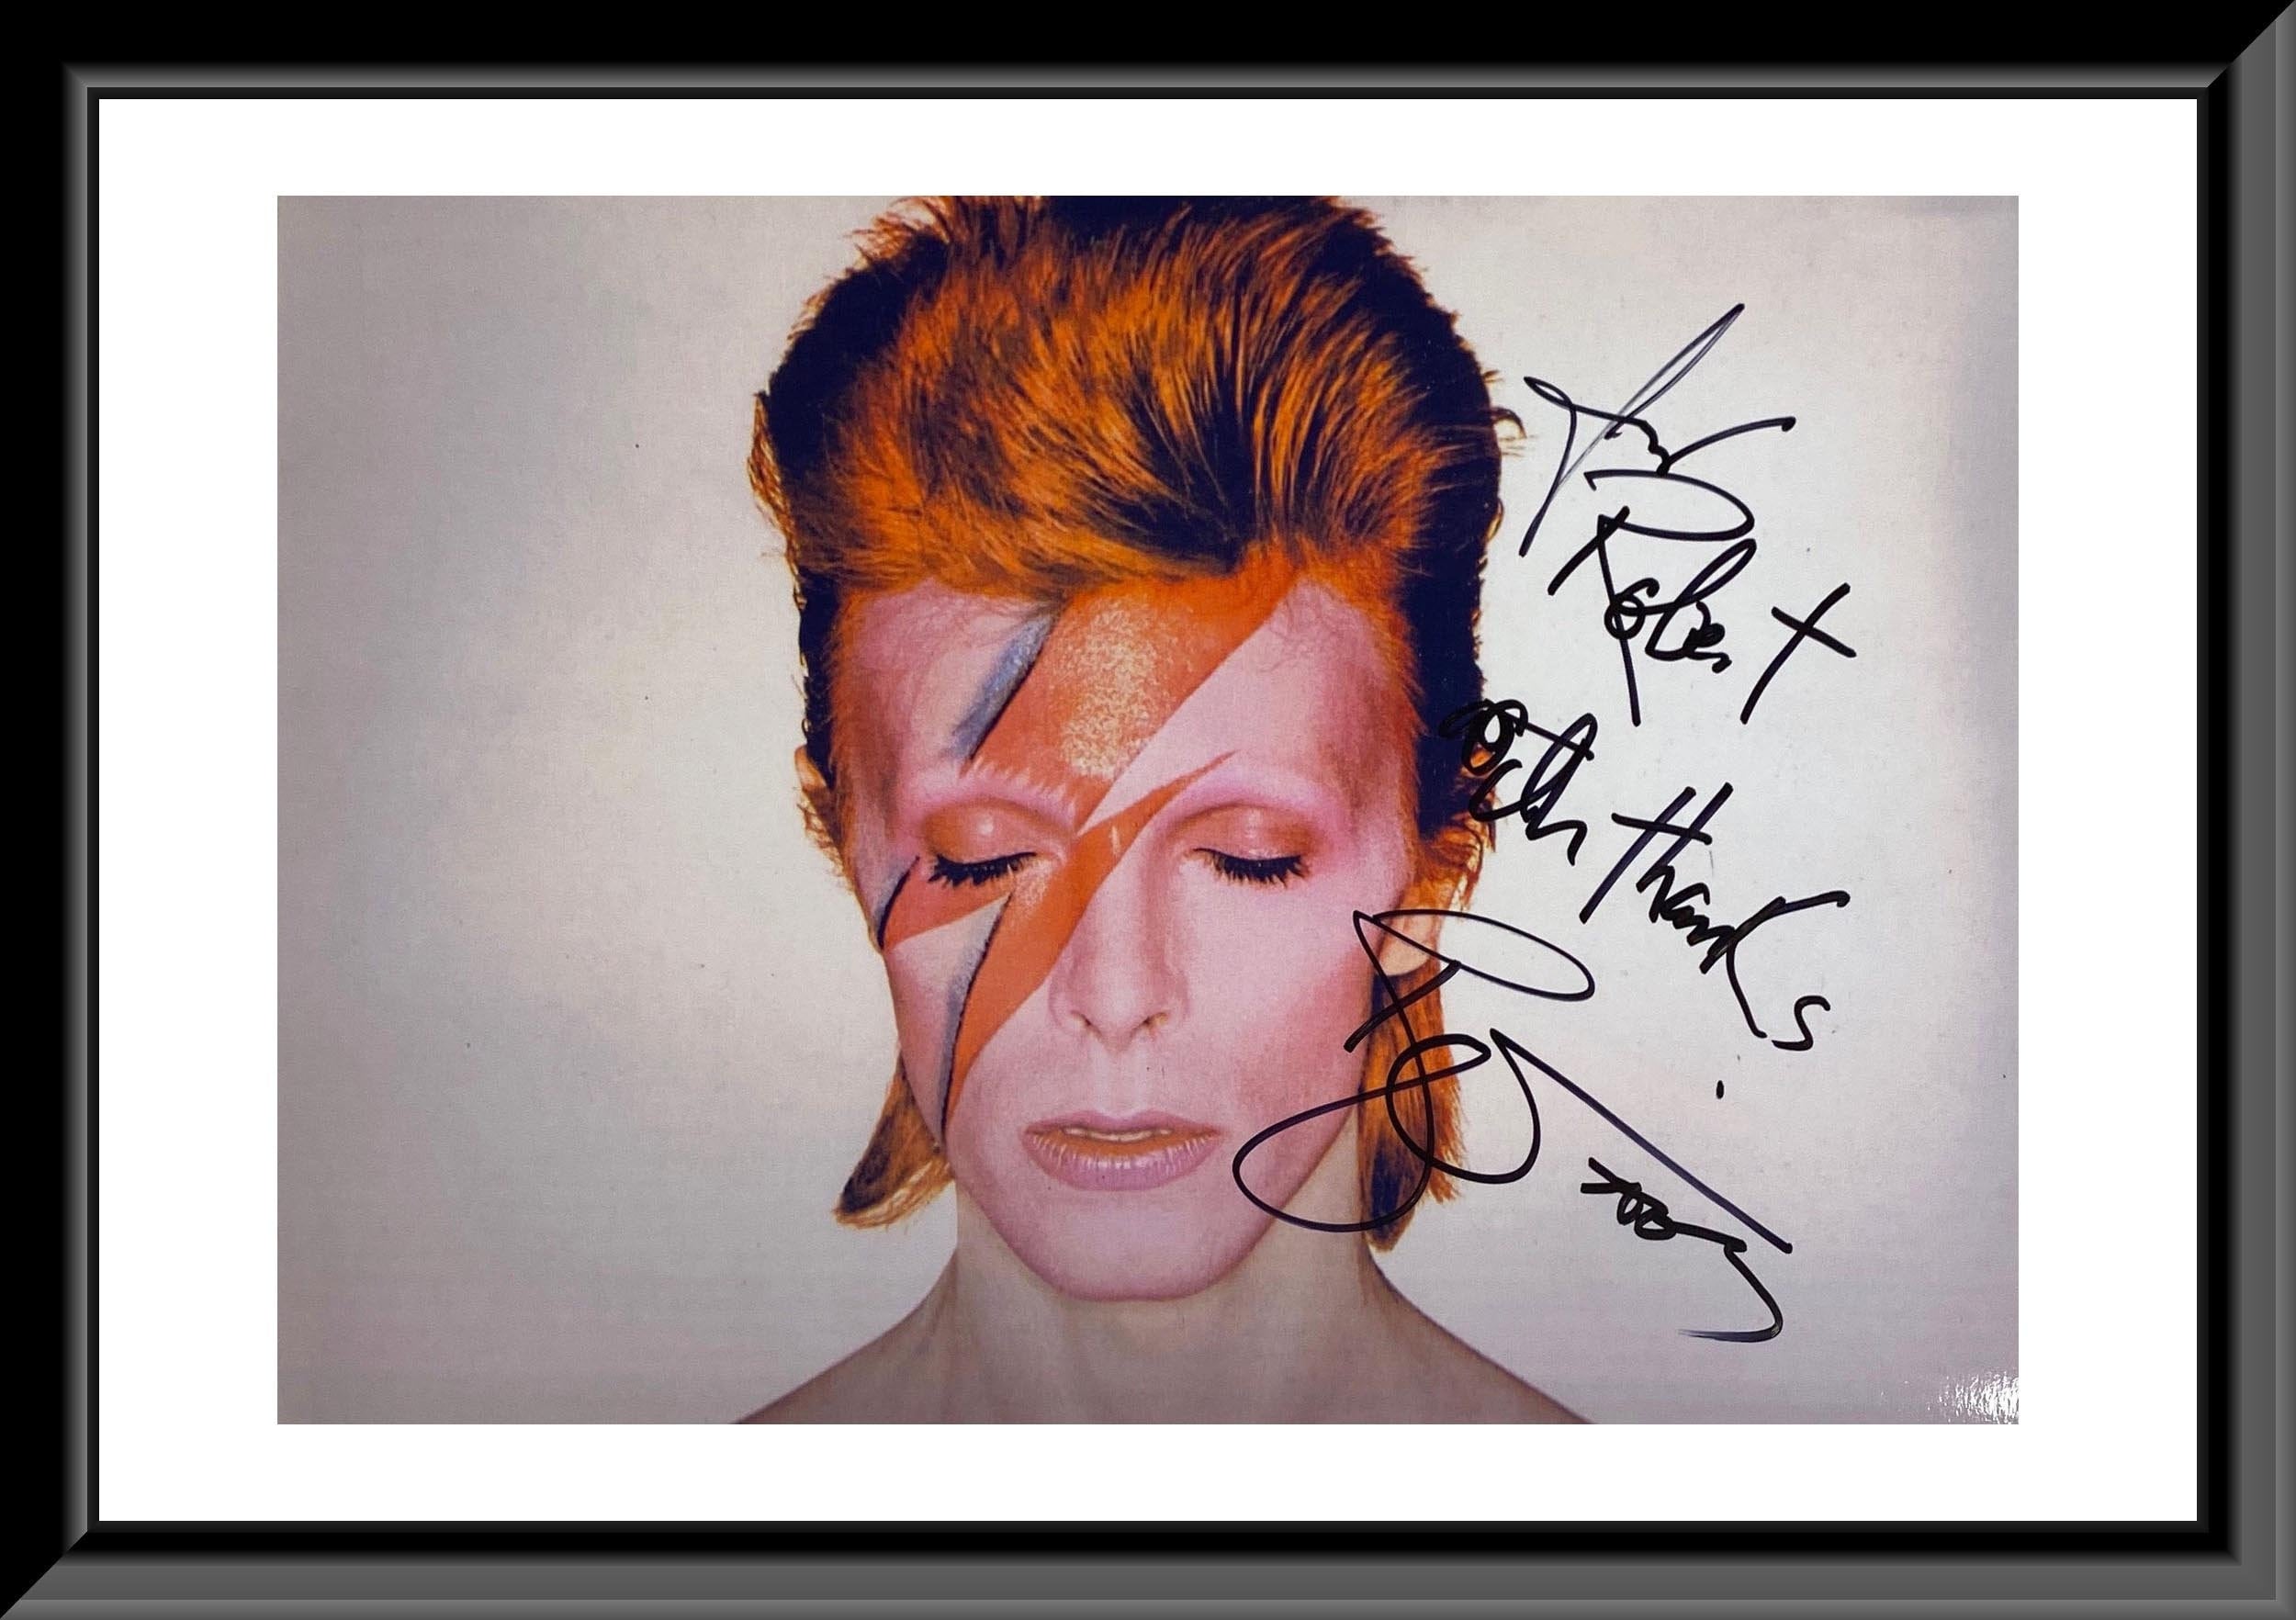 La top 10 firmata David Bowie - Ragazzamoderna.it